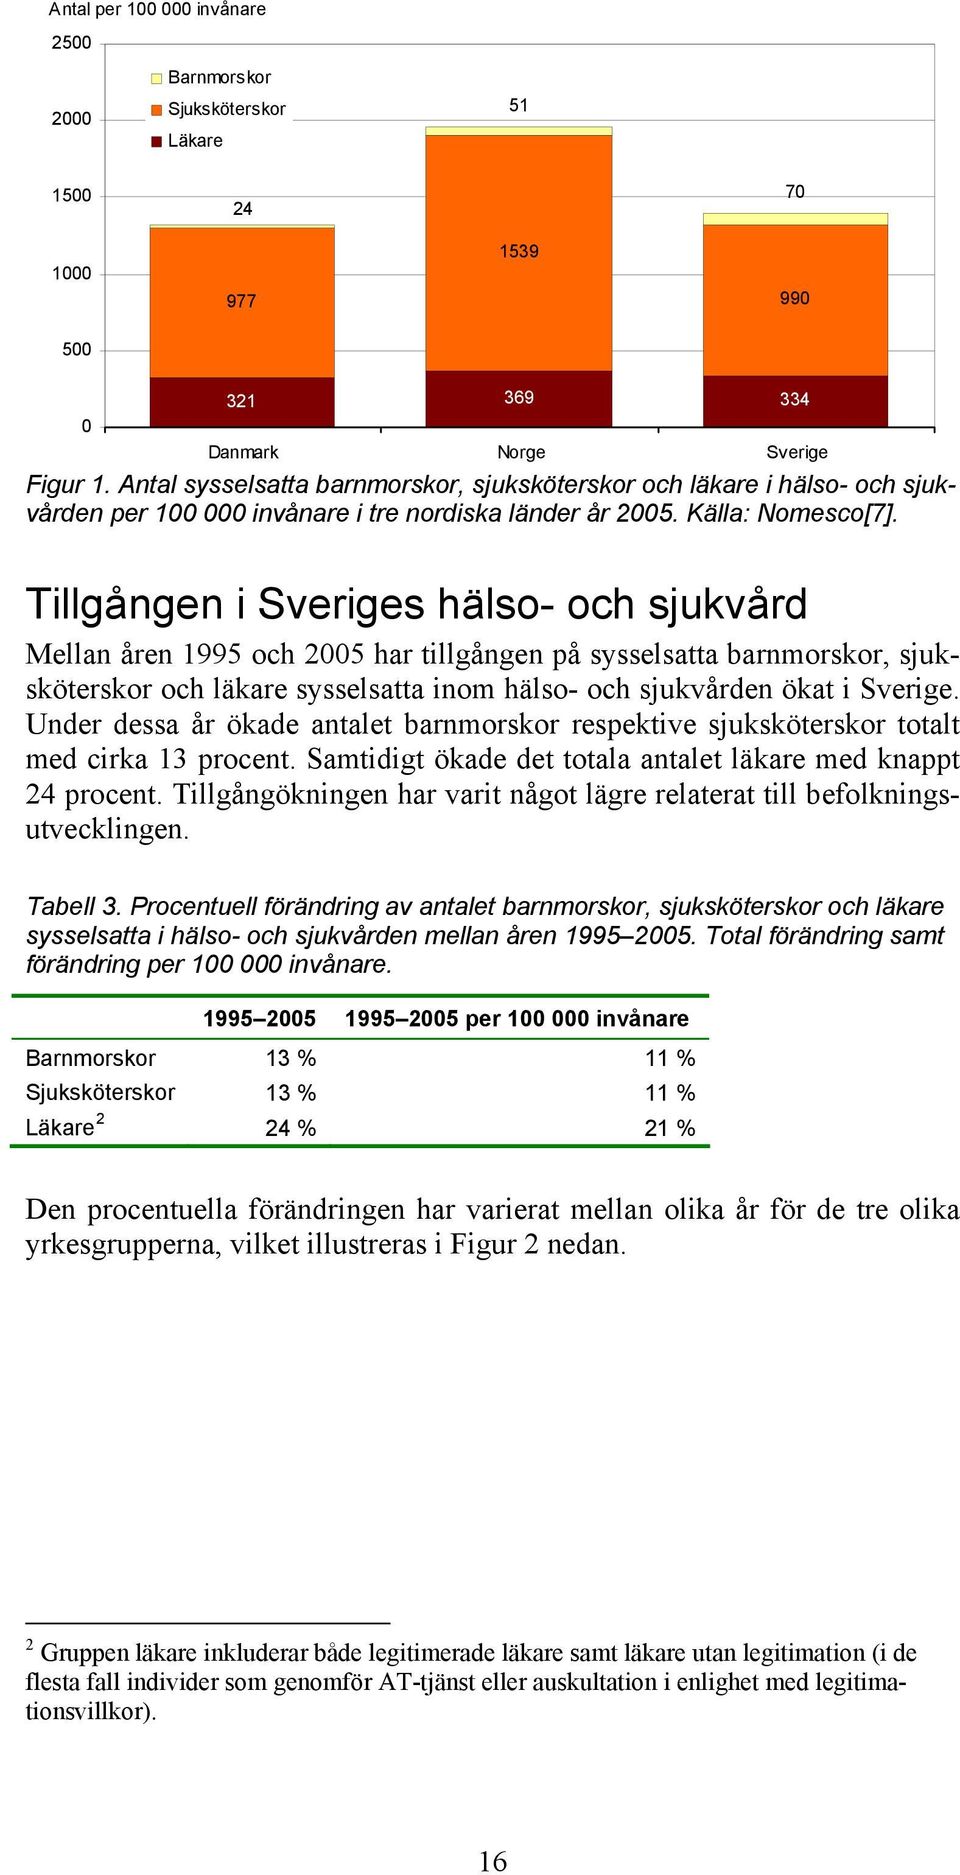 Tillgången i Sveriges hälso- och sjukvård Mellan åren 1995 och 2005 har tillgången på sysselsatta barnmorskor, sjuksköterskor och läkare sysselsatta inom hälso- och sjukvården ökat i Sverige.